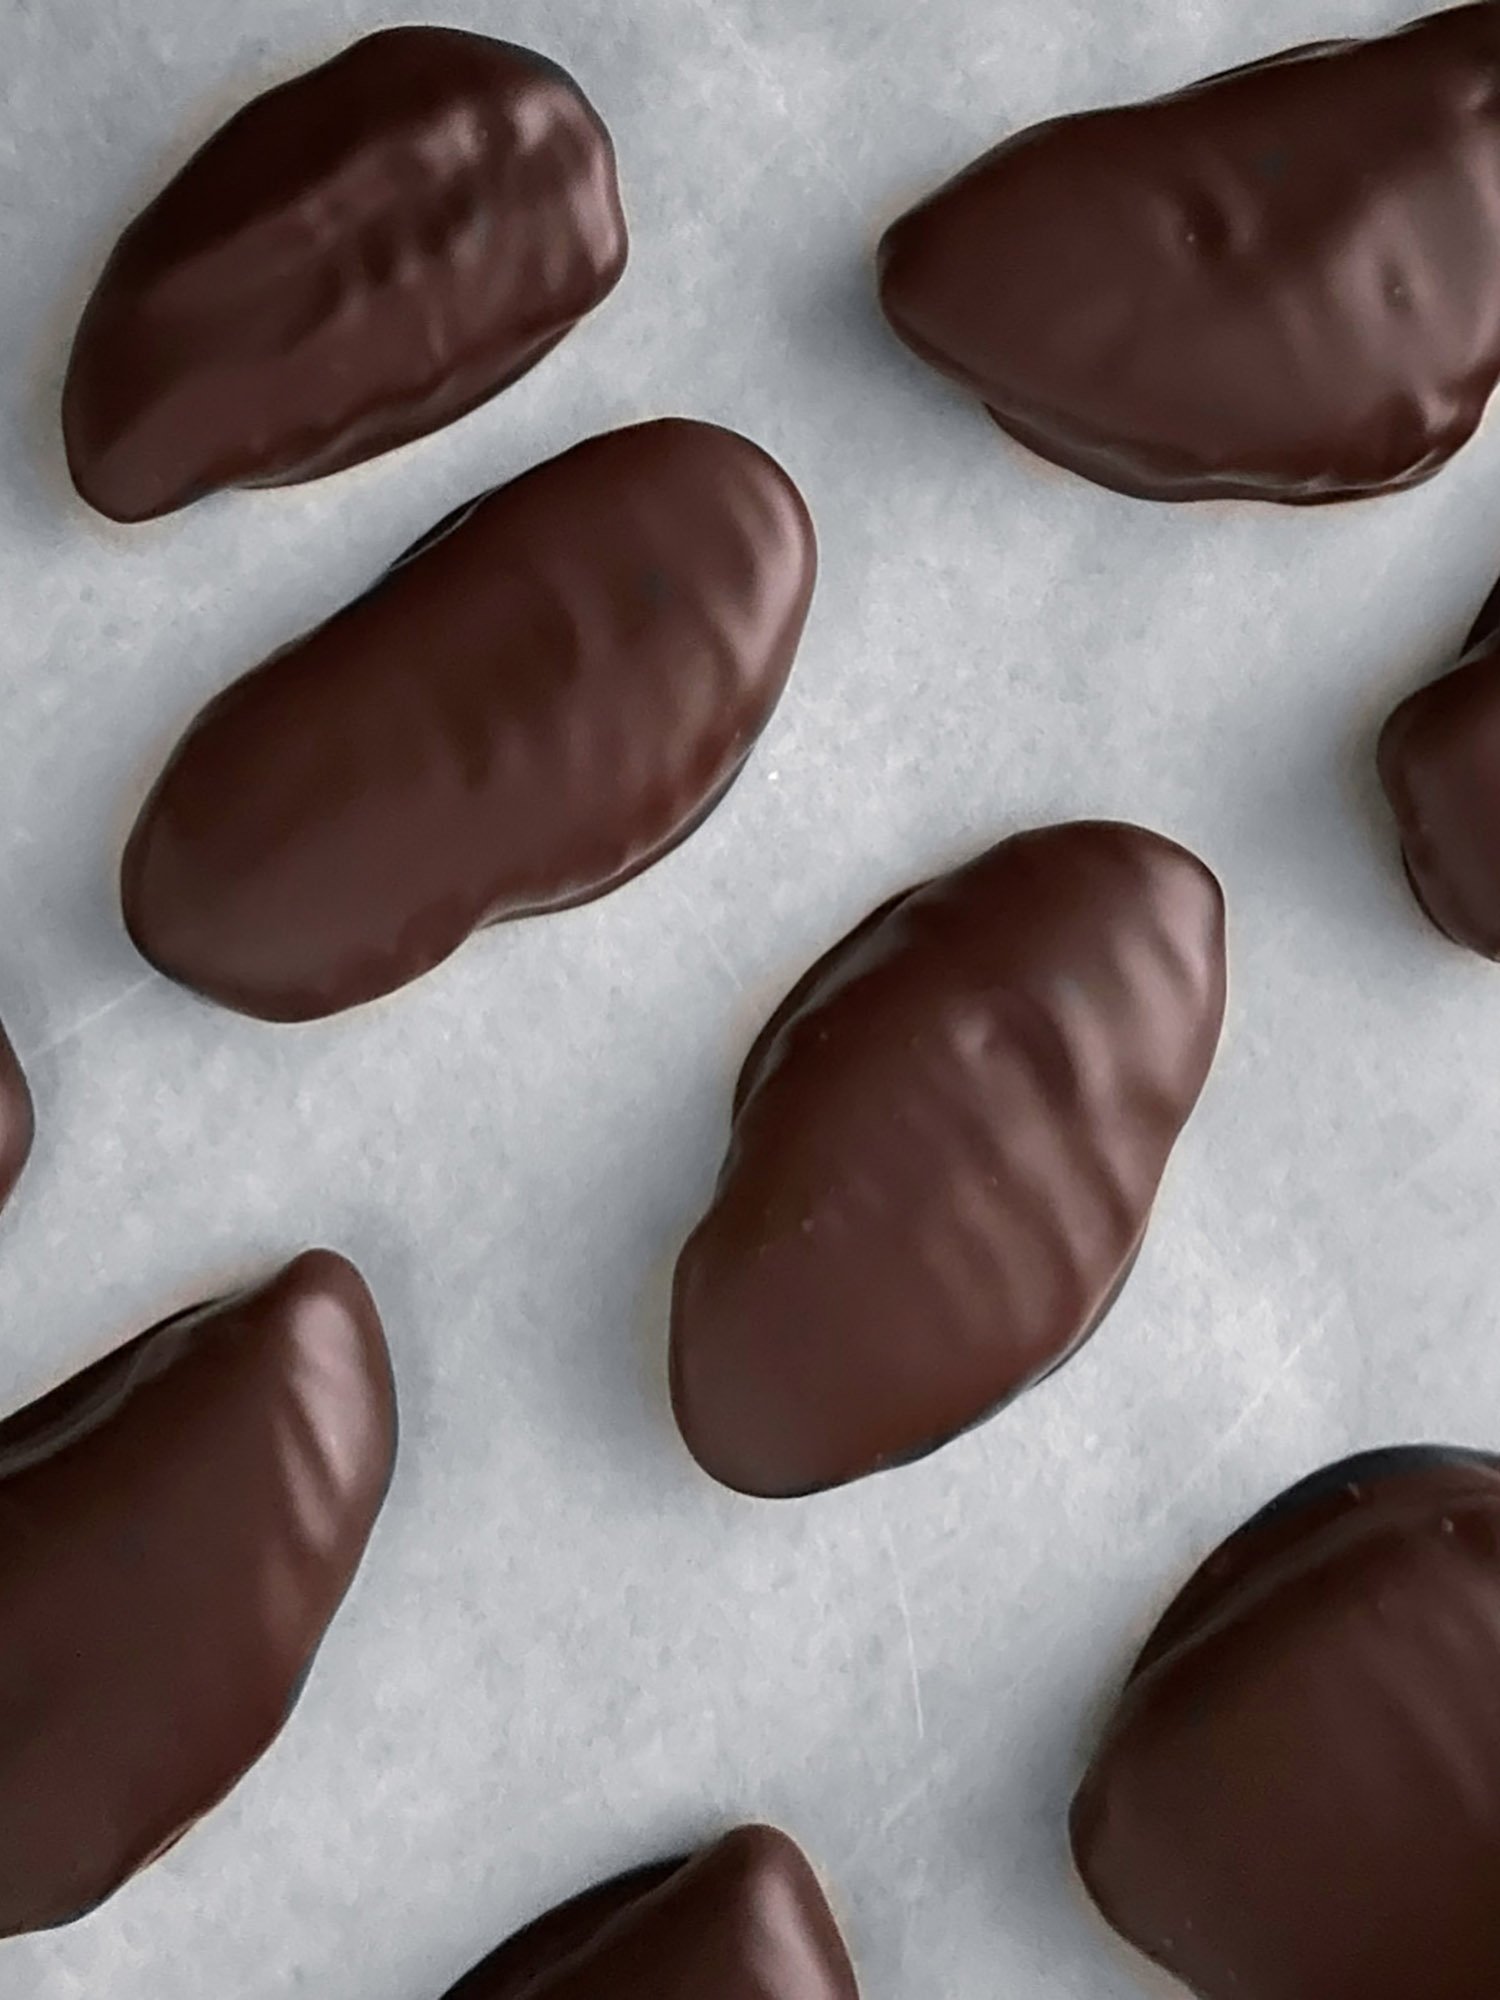 Kandierte Ingwerstücke, umhüllt von Grand Cru Schokolade, online bestellen bei Thomas Müller Chocolatier.